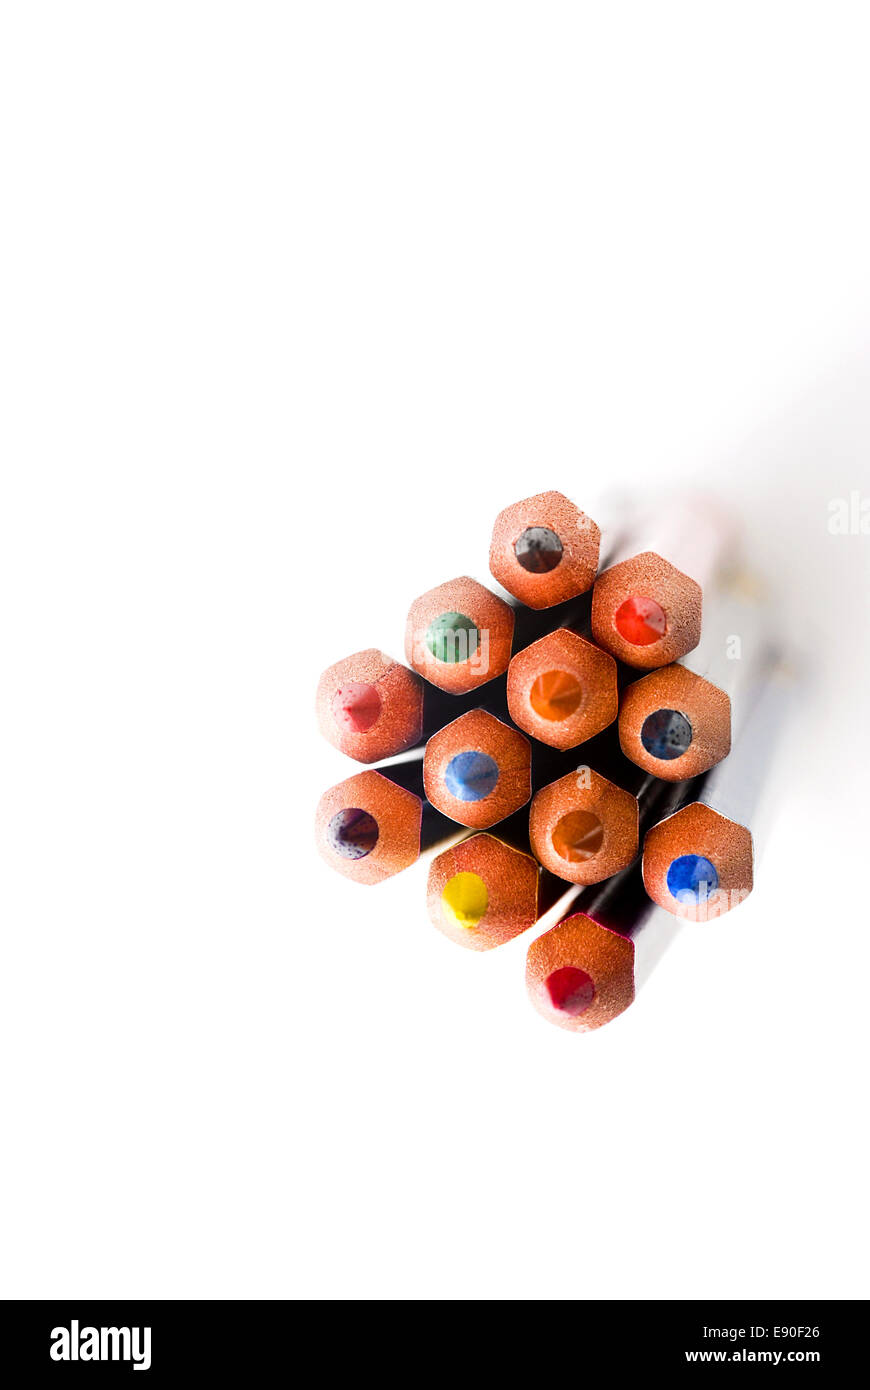 Pencils Stock Photo